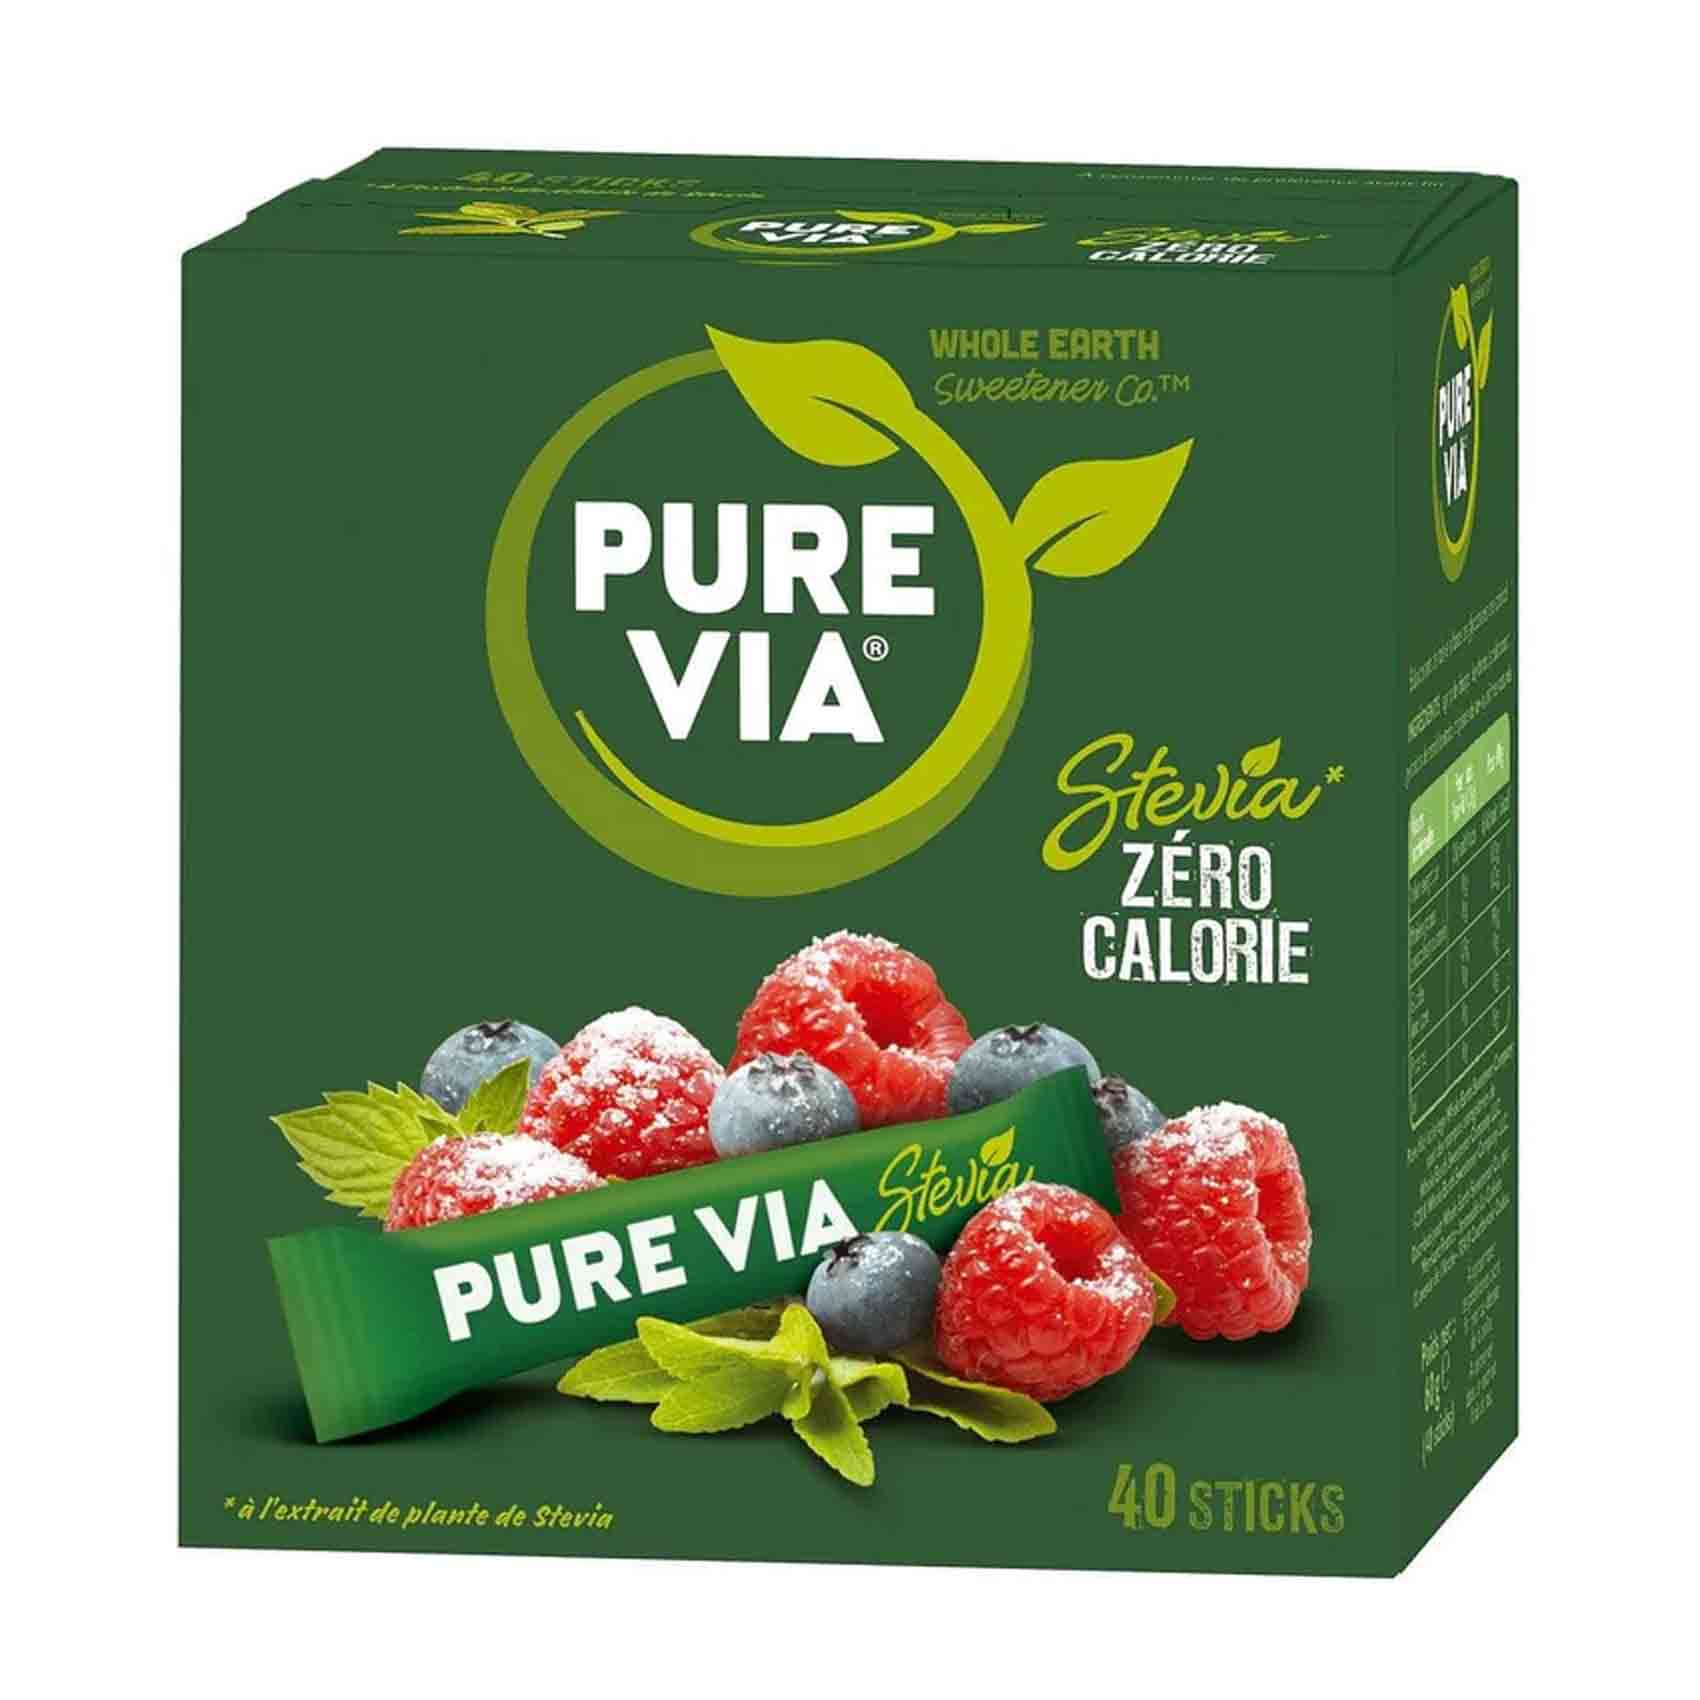 Pure Via Stevia Zero Calorie 40 Sticks